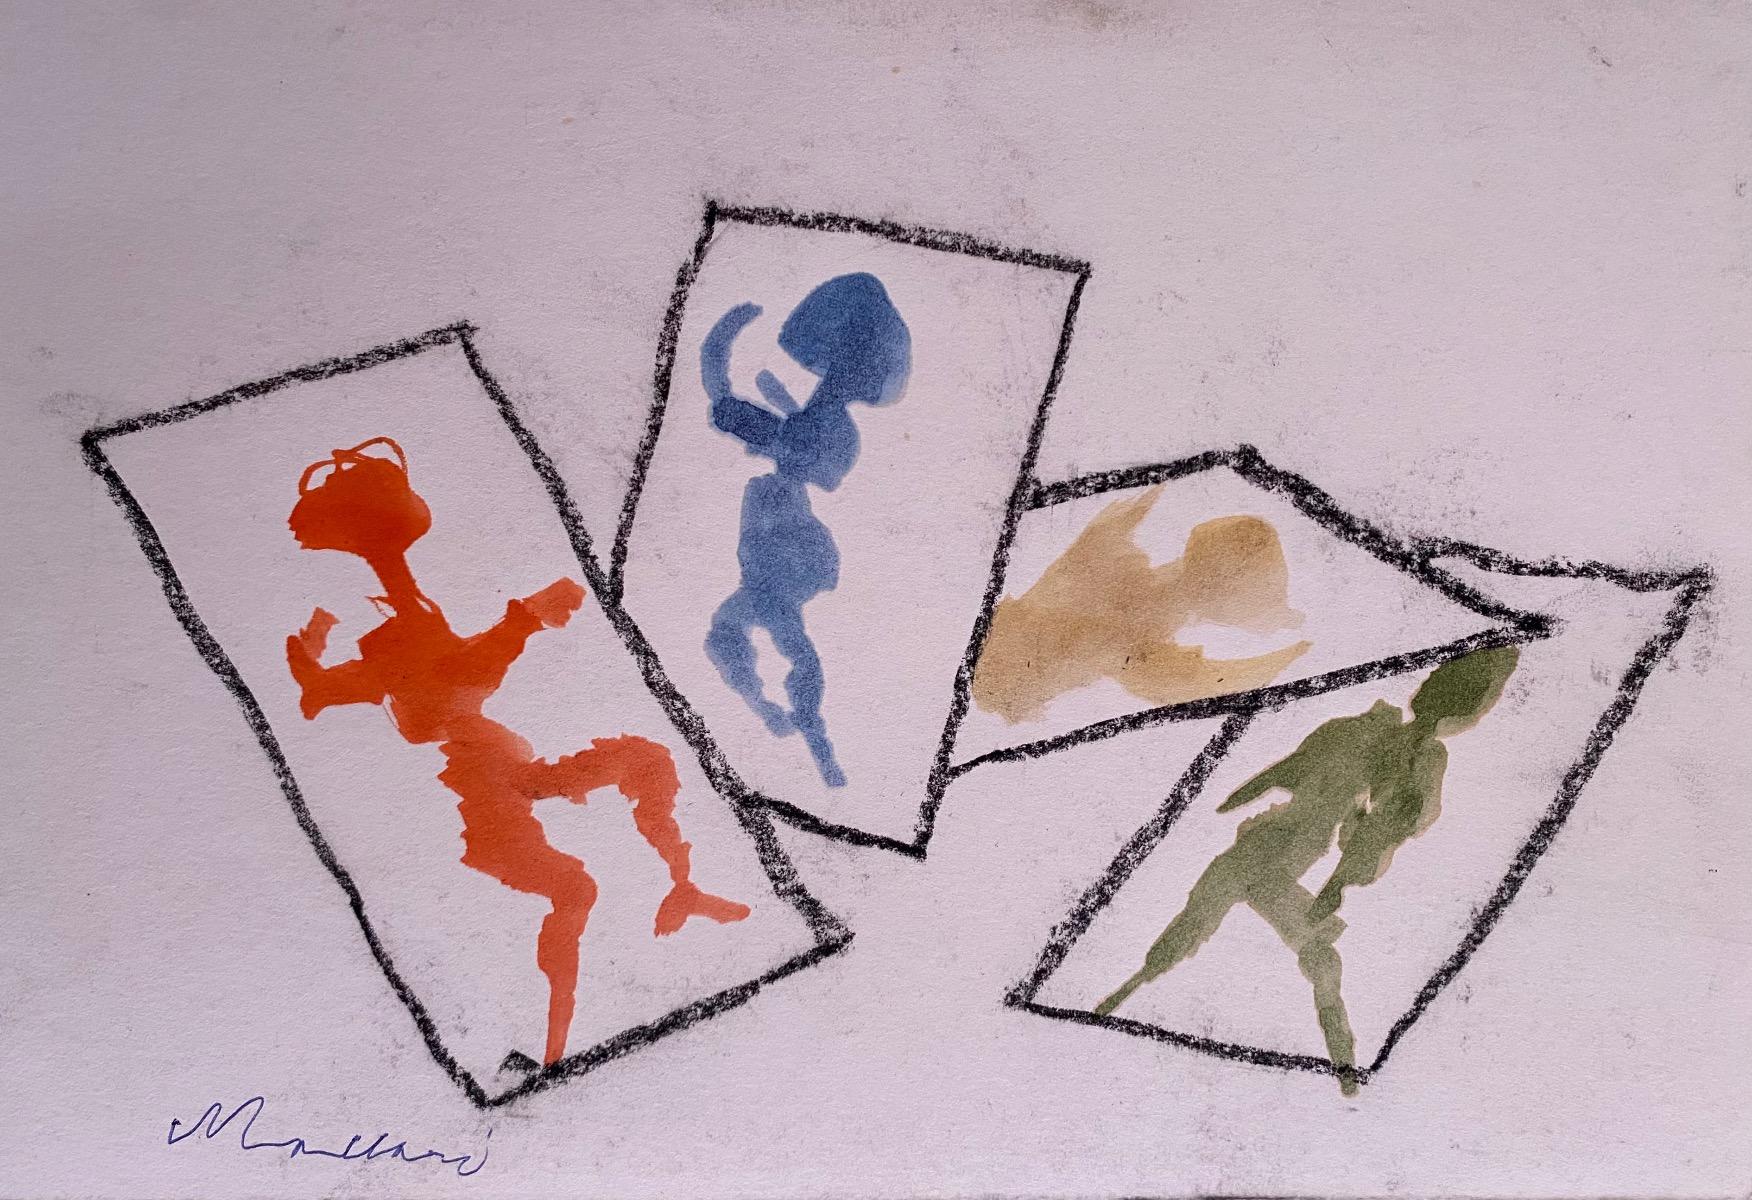 Shadows - Original Pencil and Watercolor by Mino Maccari - 1965